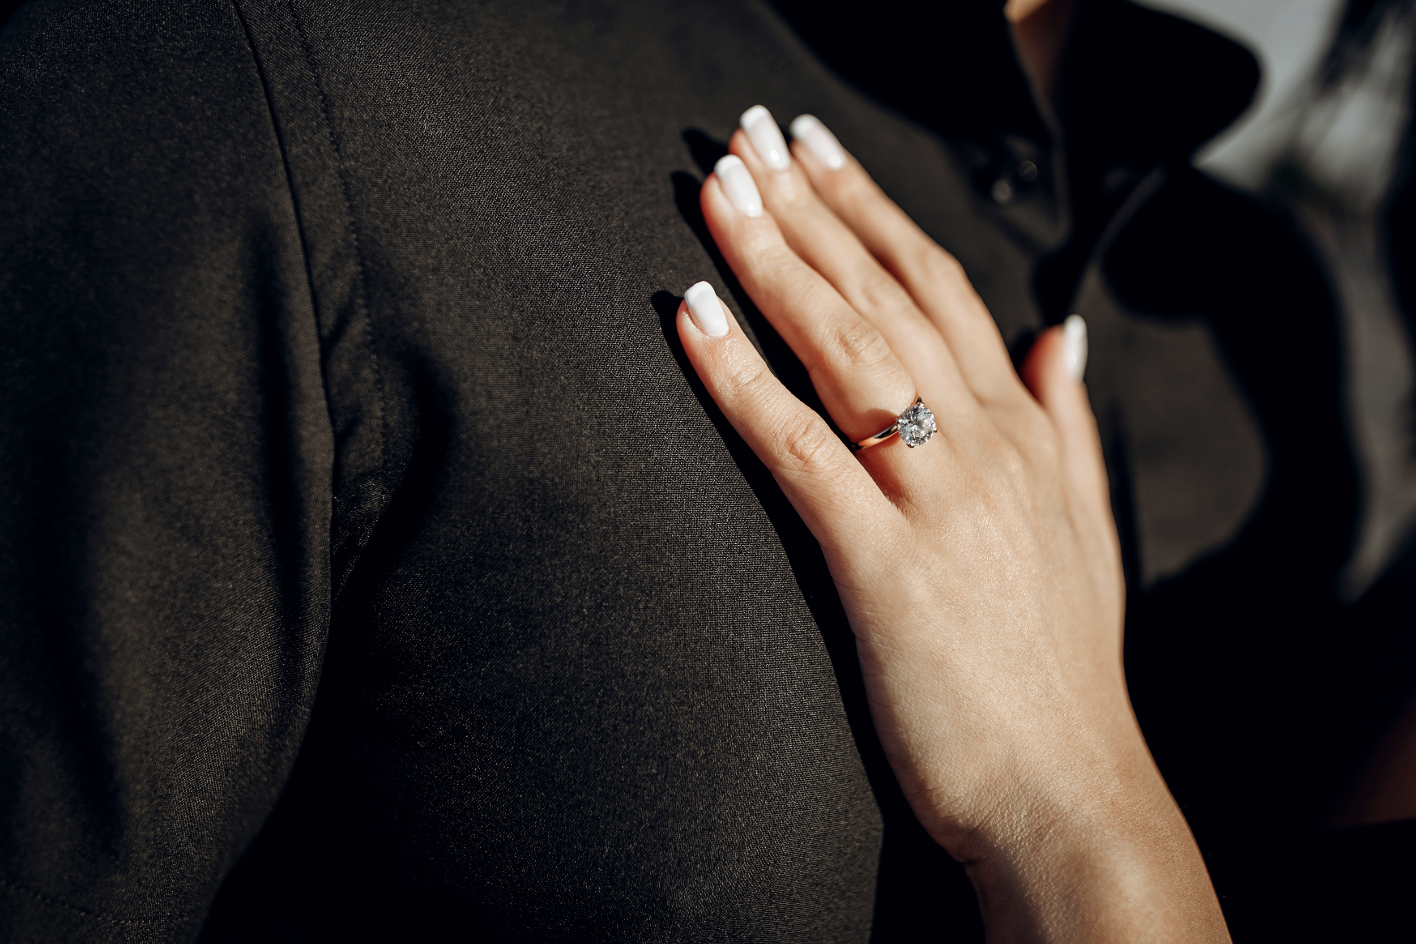 La main d'une femme avec une alliance | Source : Shutterstock